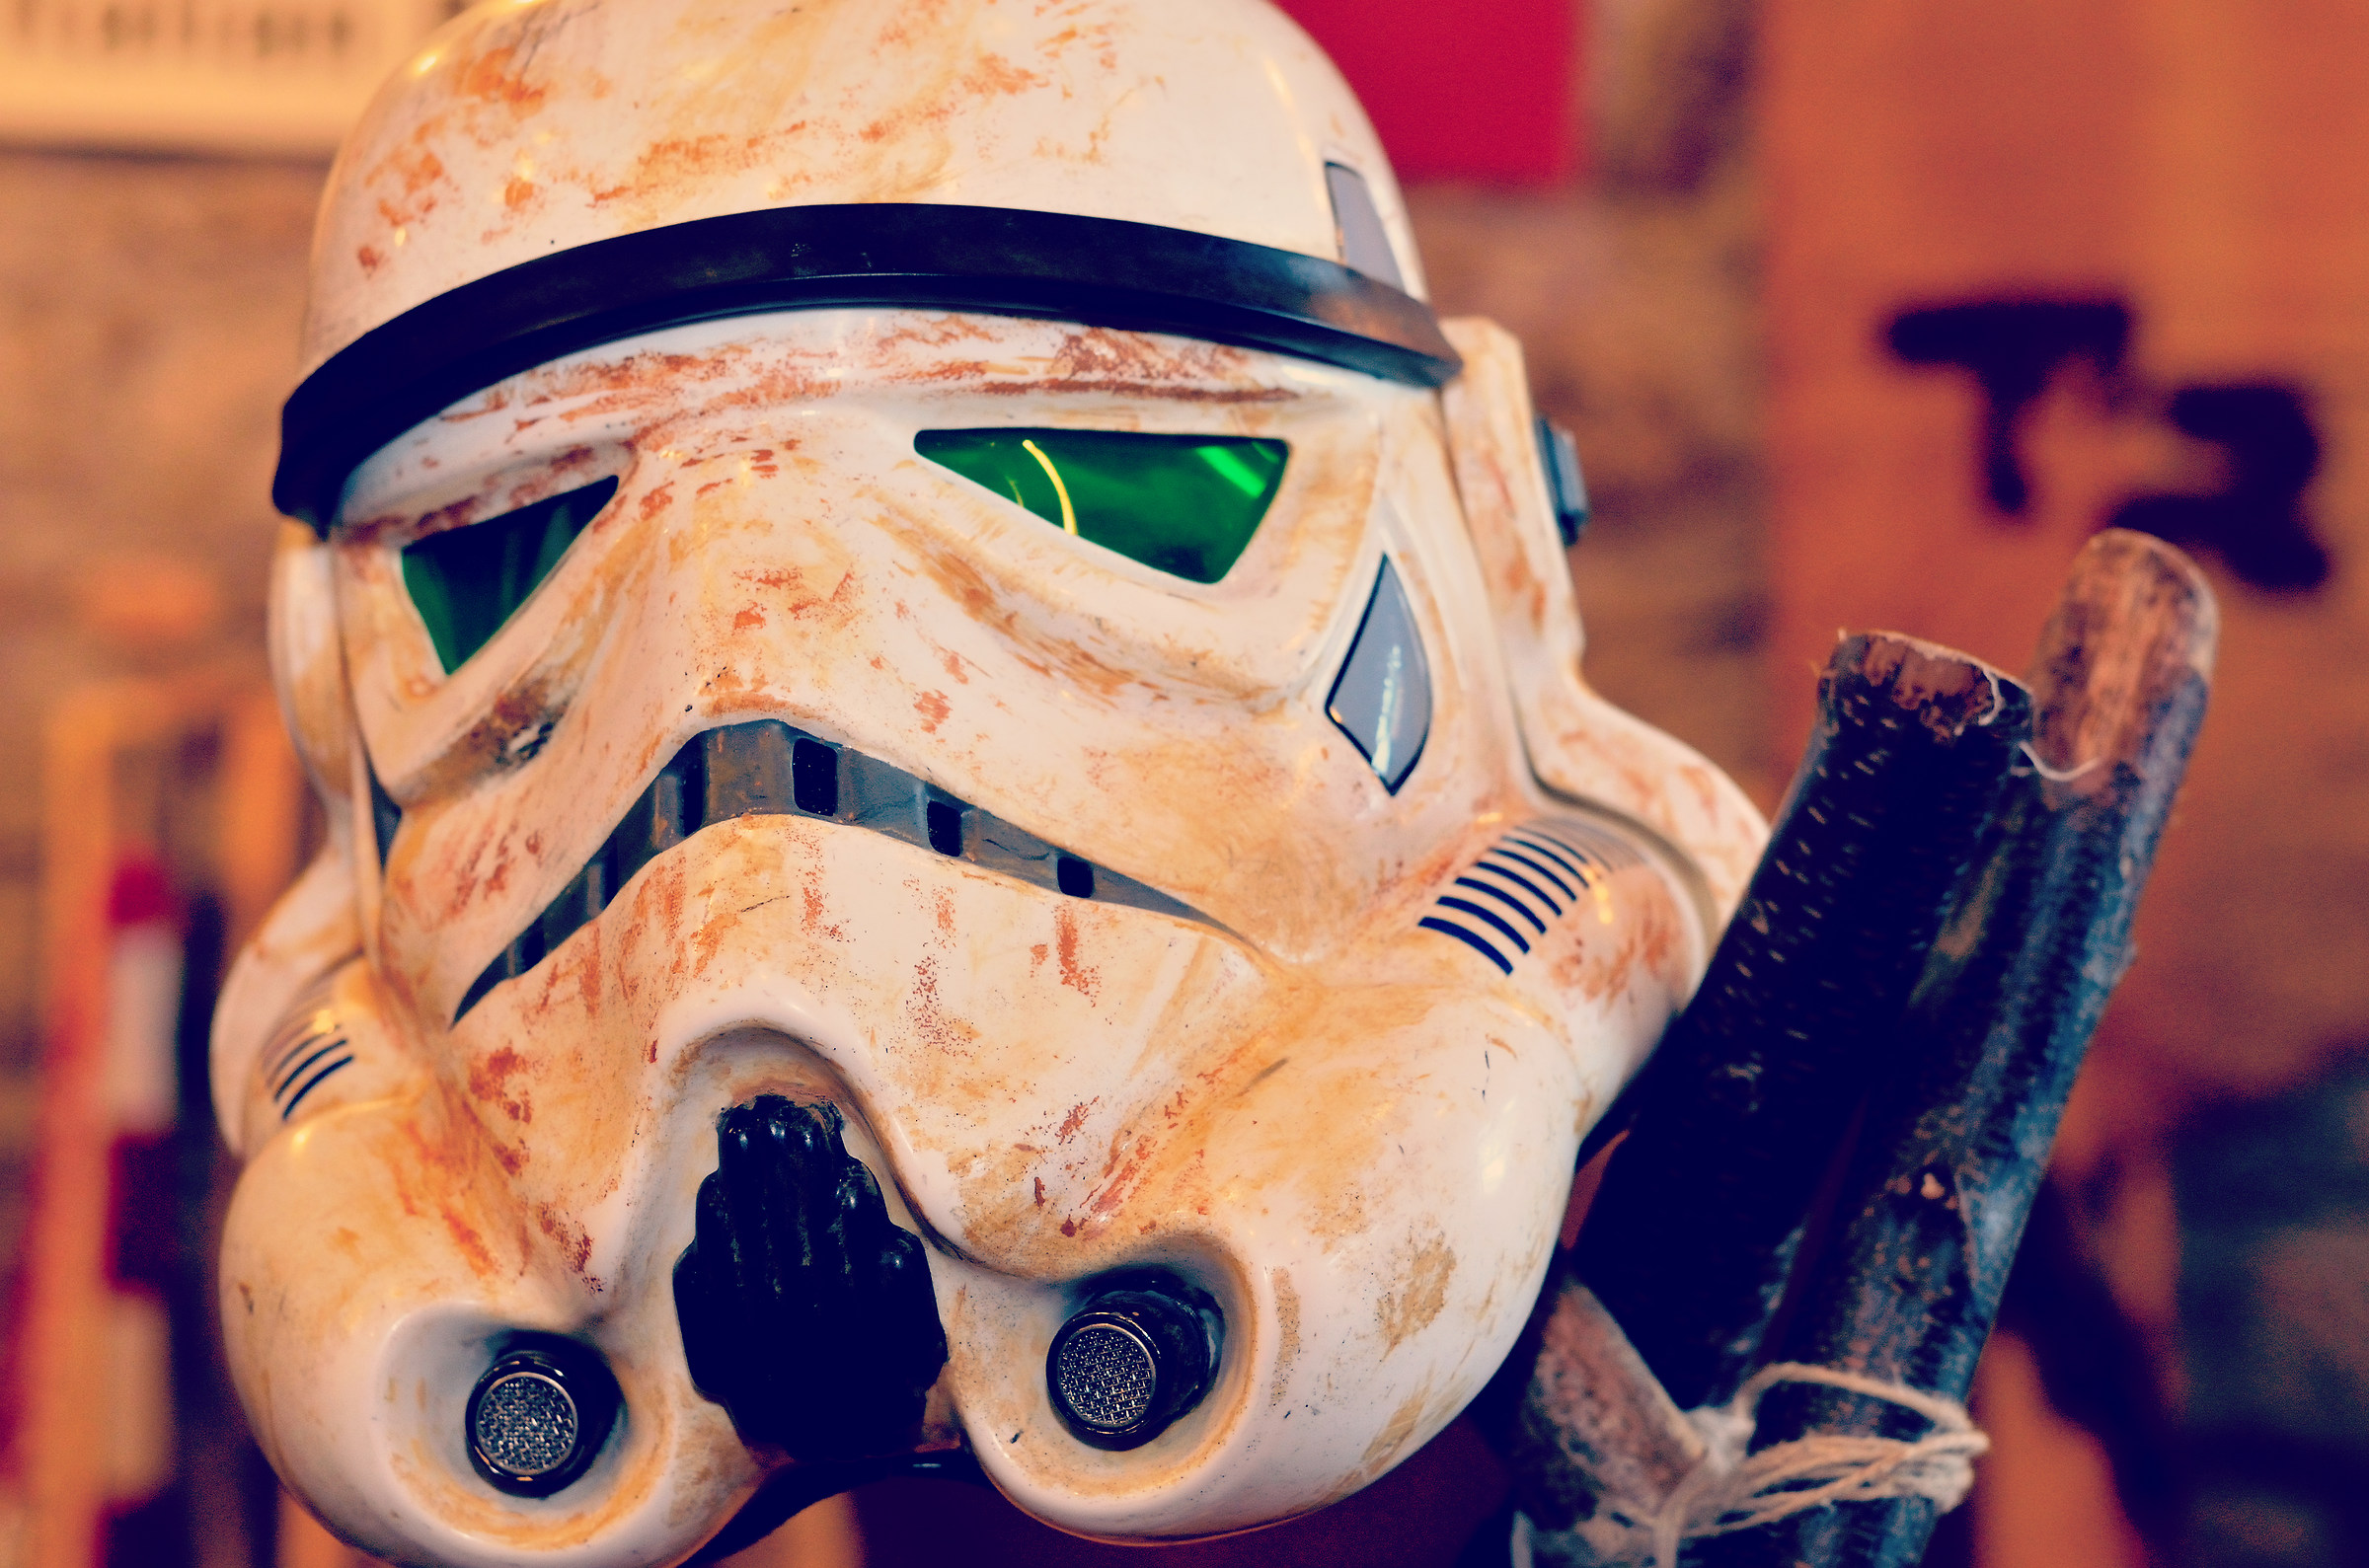 stormtrooper's helmet...